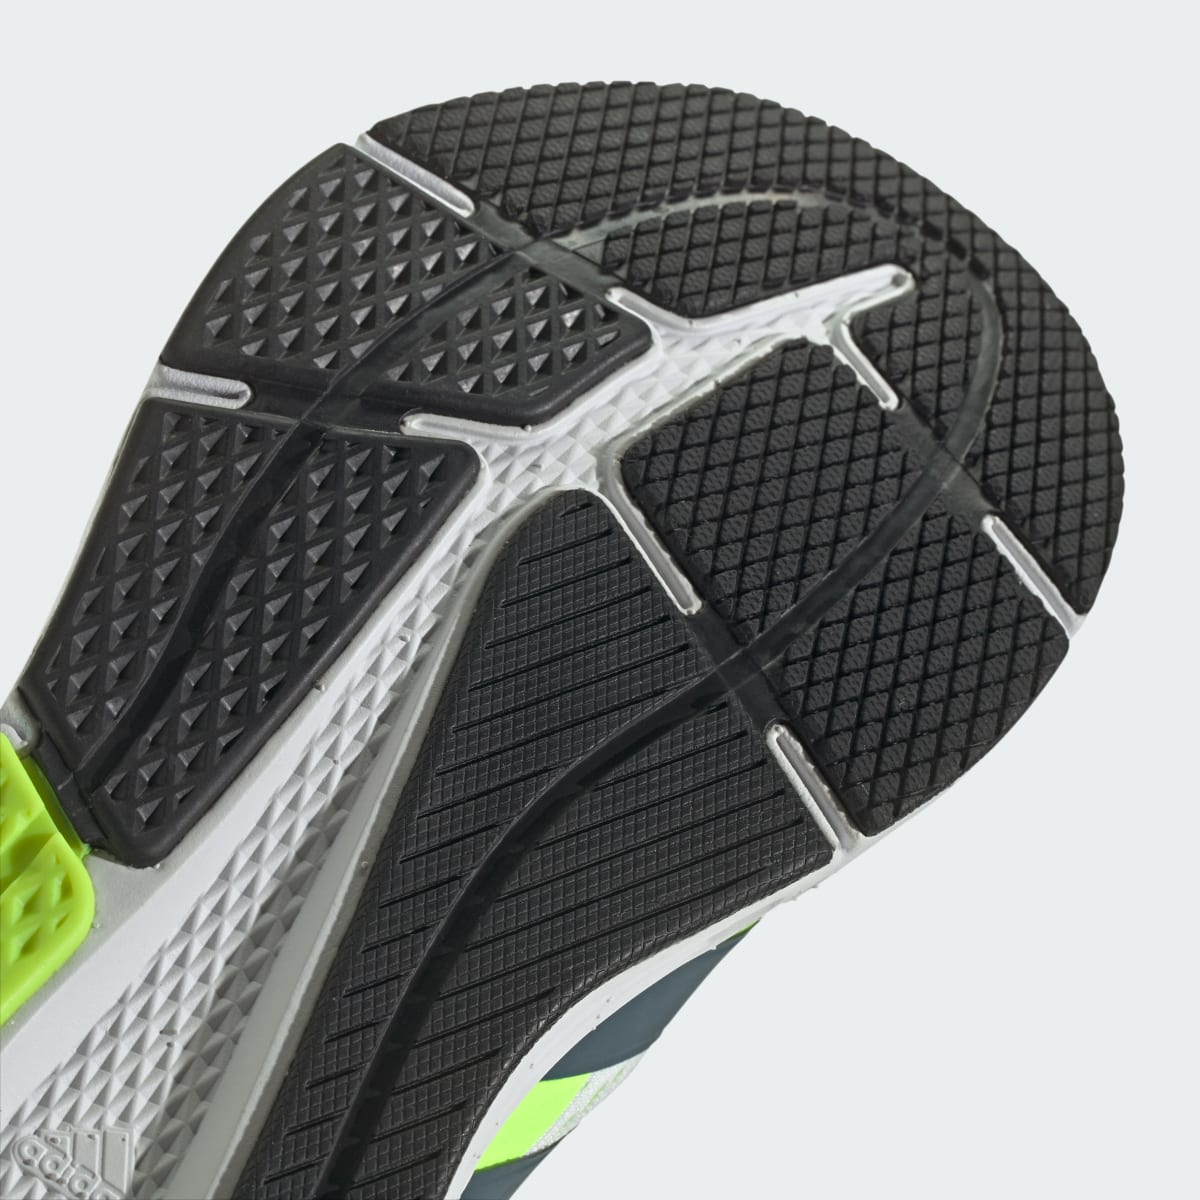 Adidas Questar Ayakkabı. 4